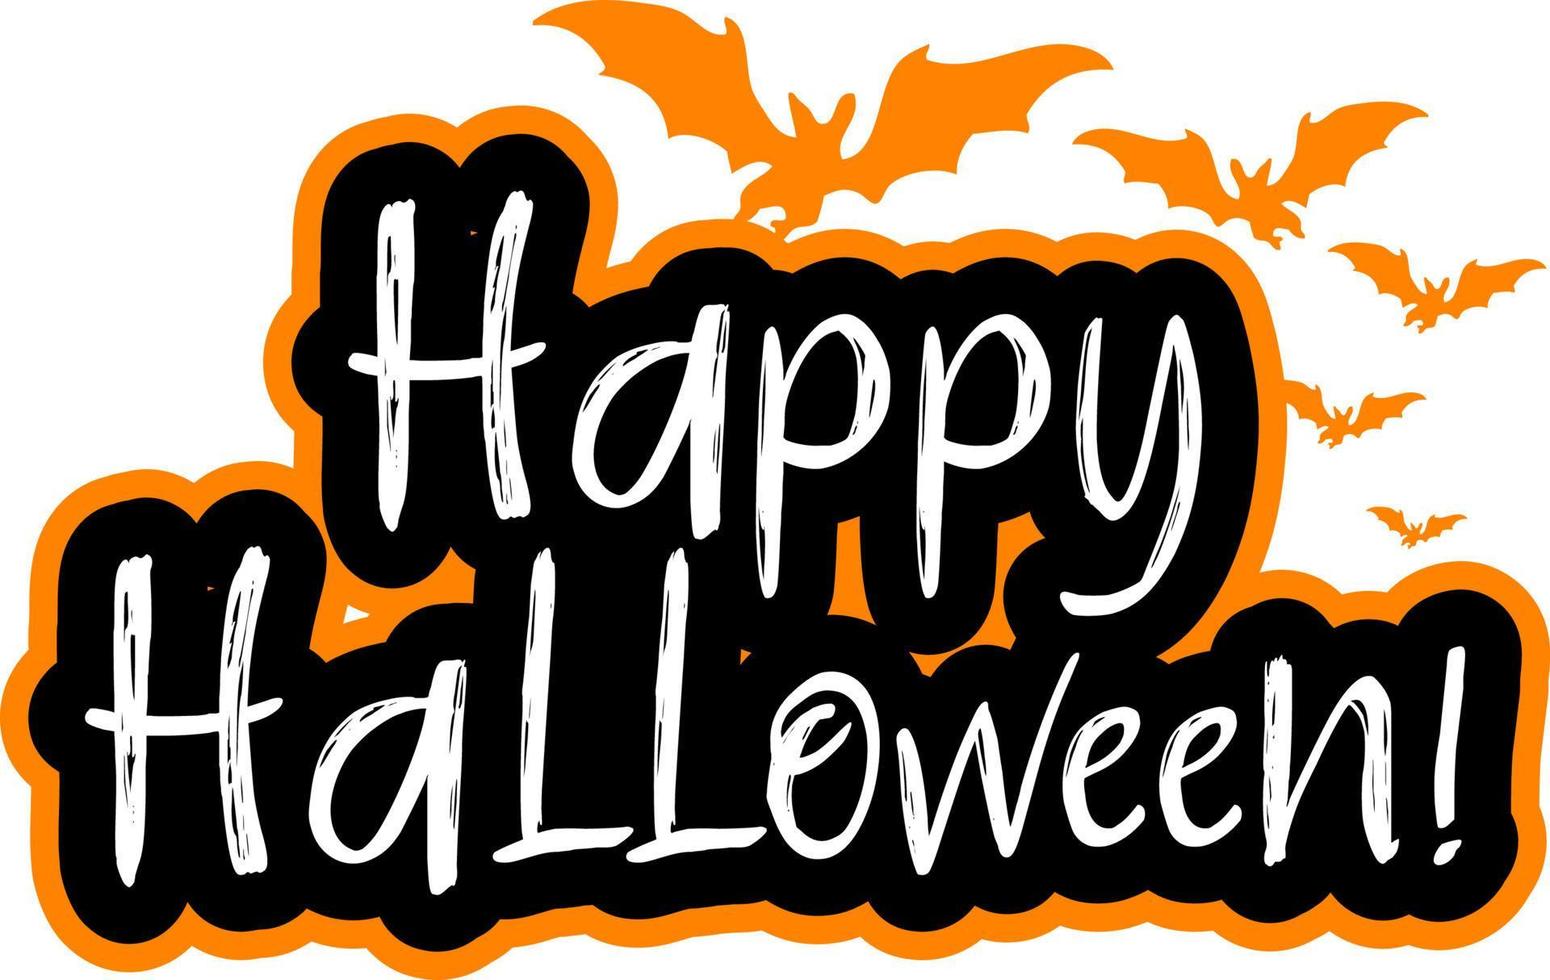 Happy Halloween word logo with bats vector